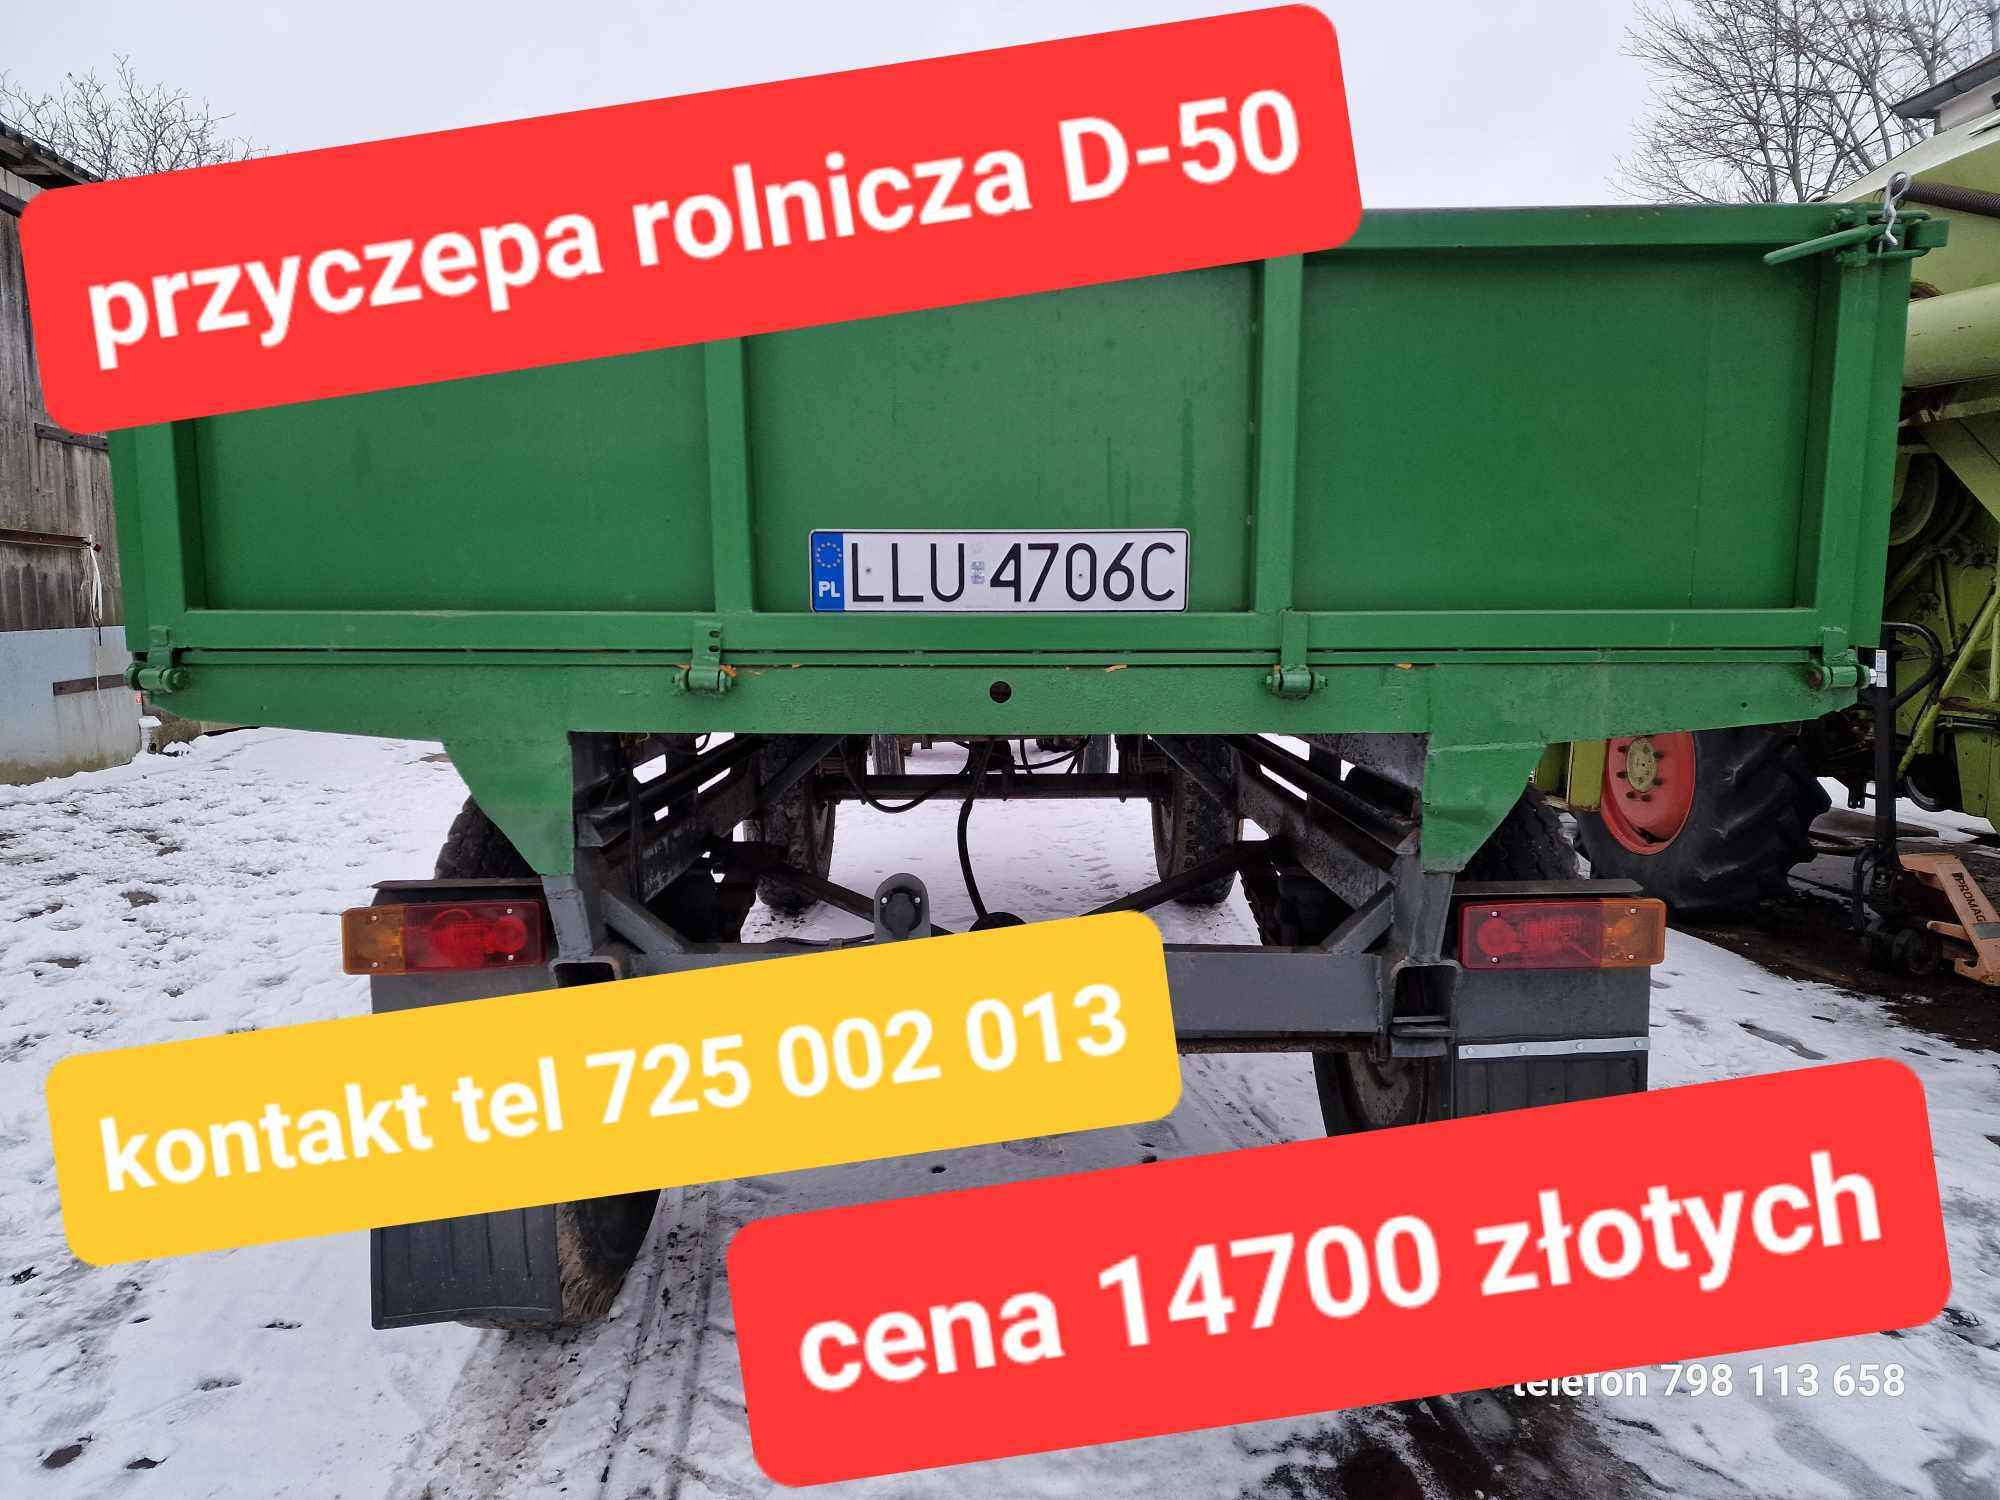 PRZYCZEPA Rolnicza Autosan D50 Sanok D-50 Międzyrzec Sprawna Opłacona Mołożów - zdjęcie 1